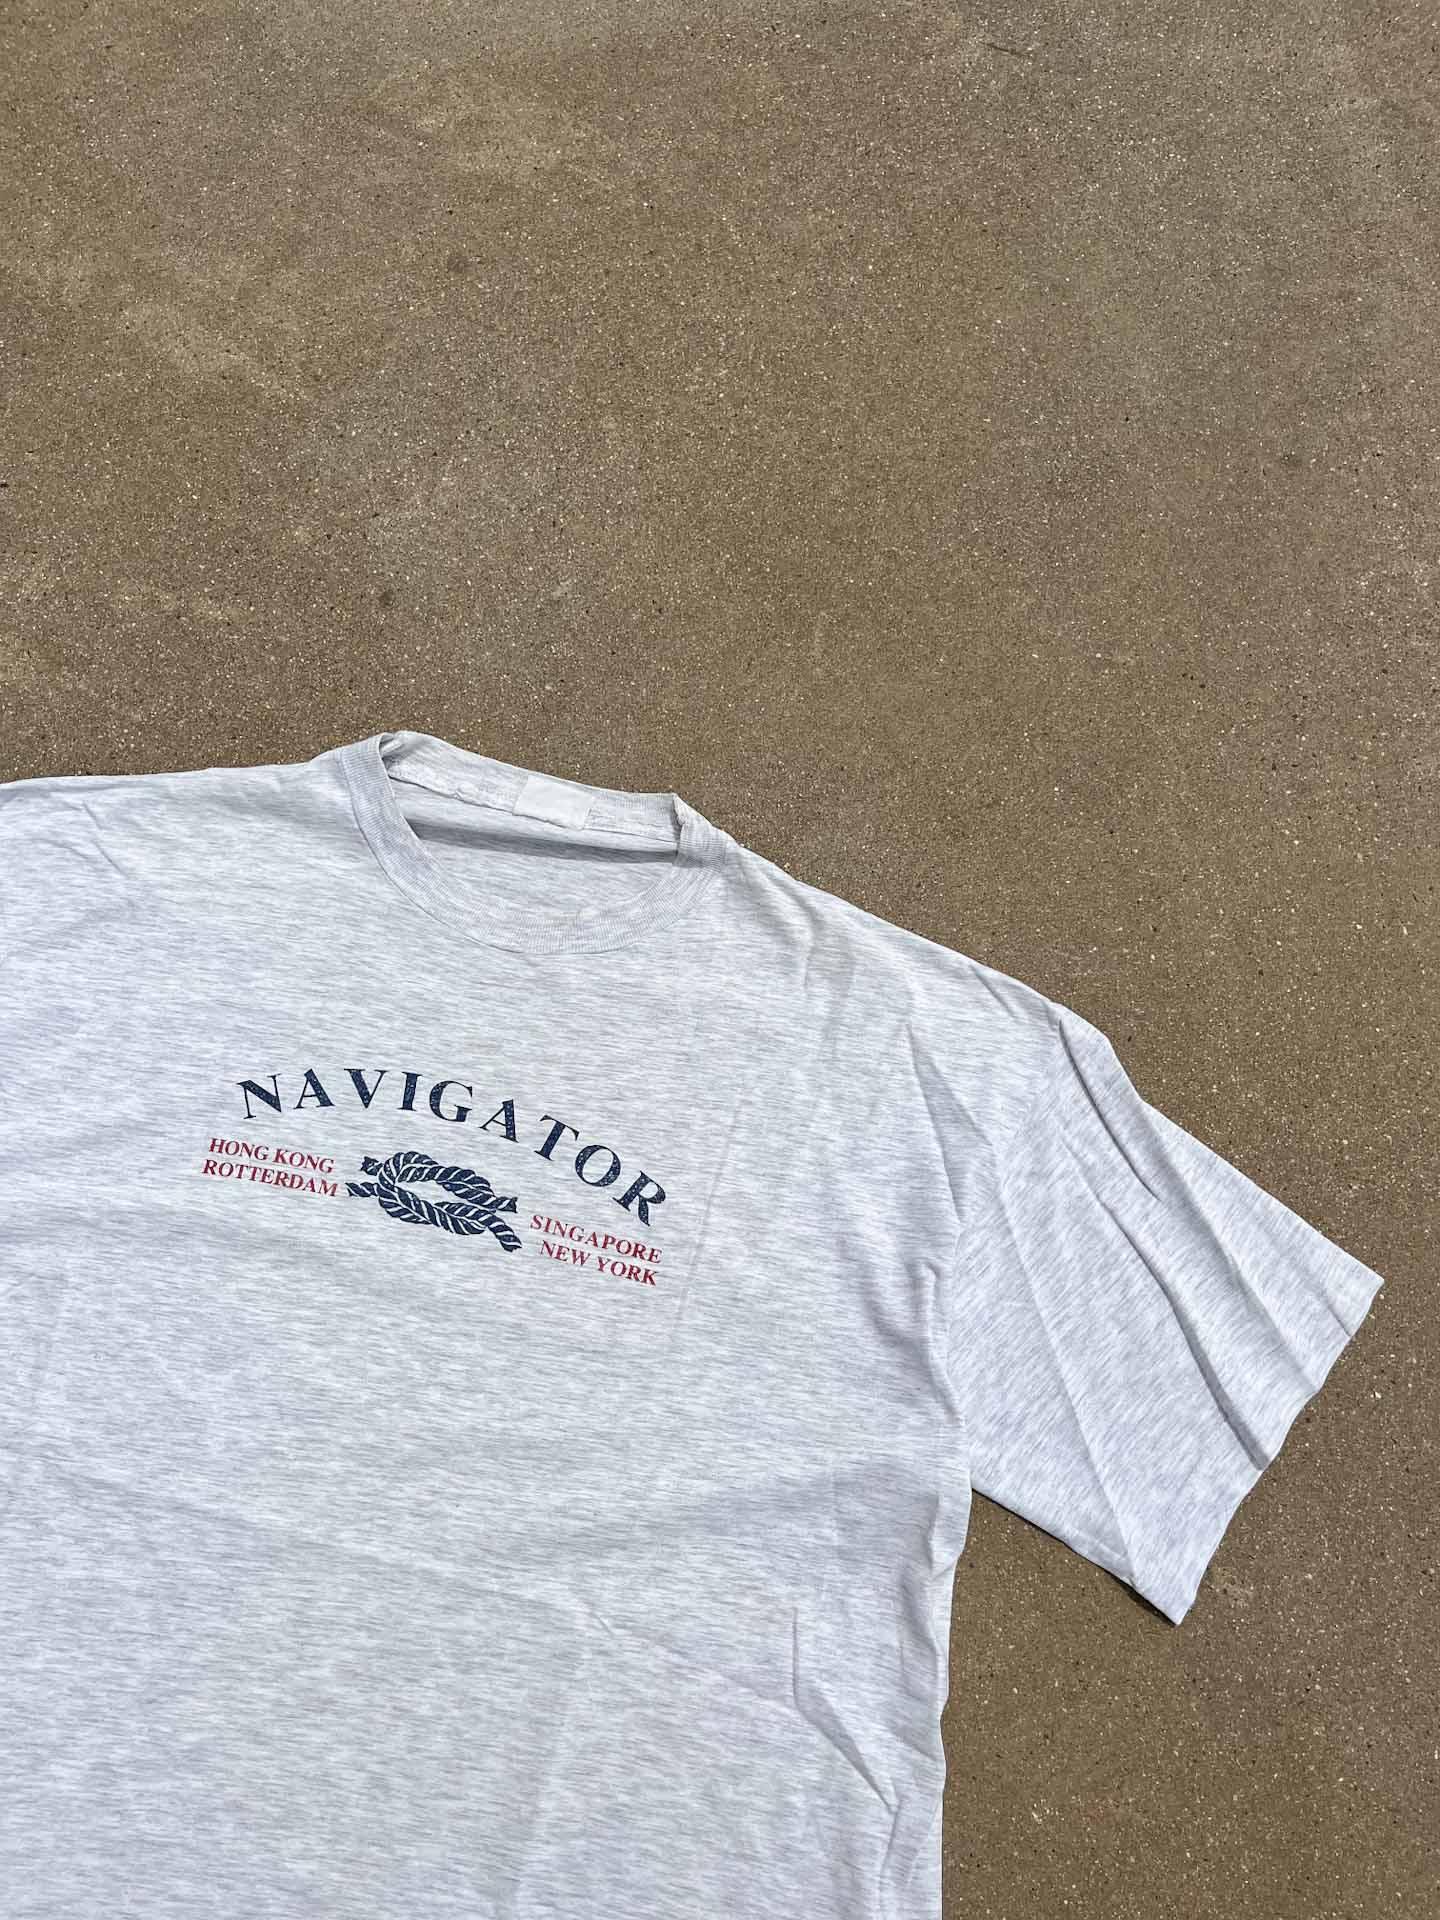 Navigator vintage T-Shirt - secondvintage